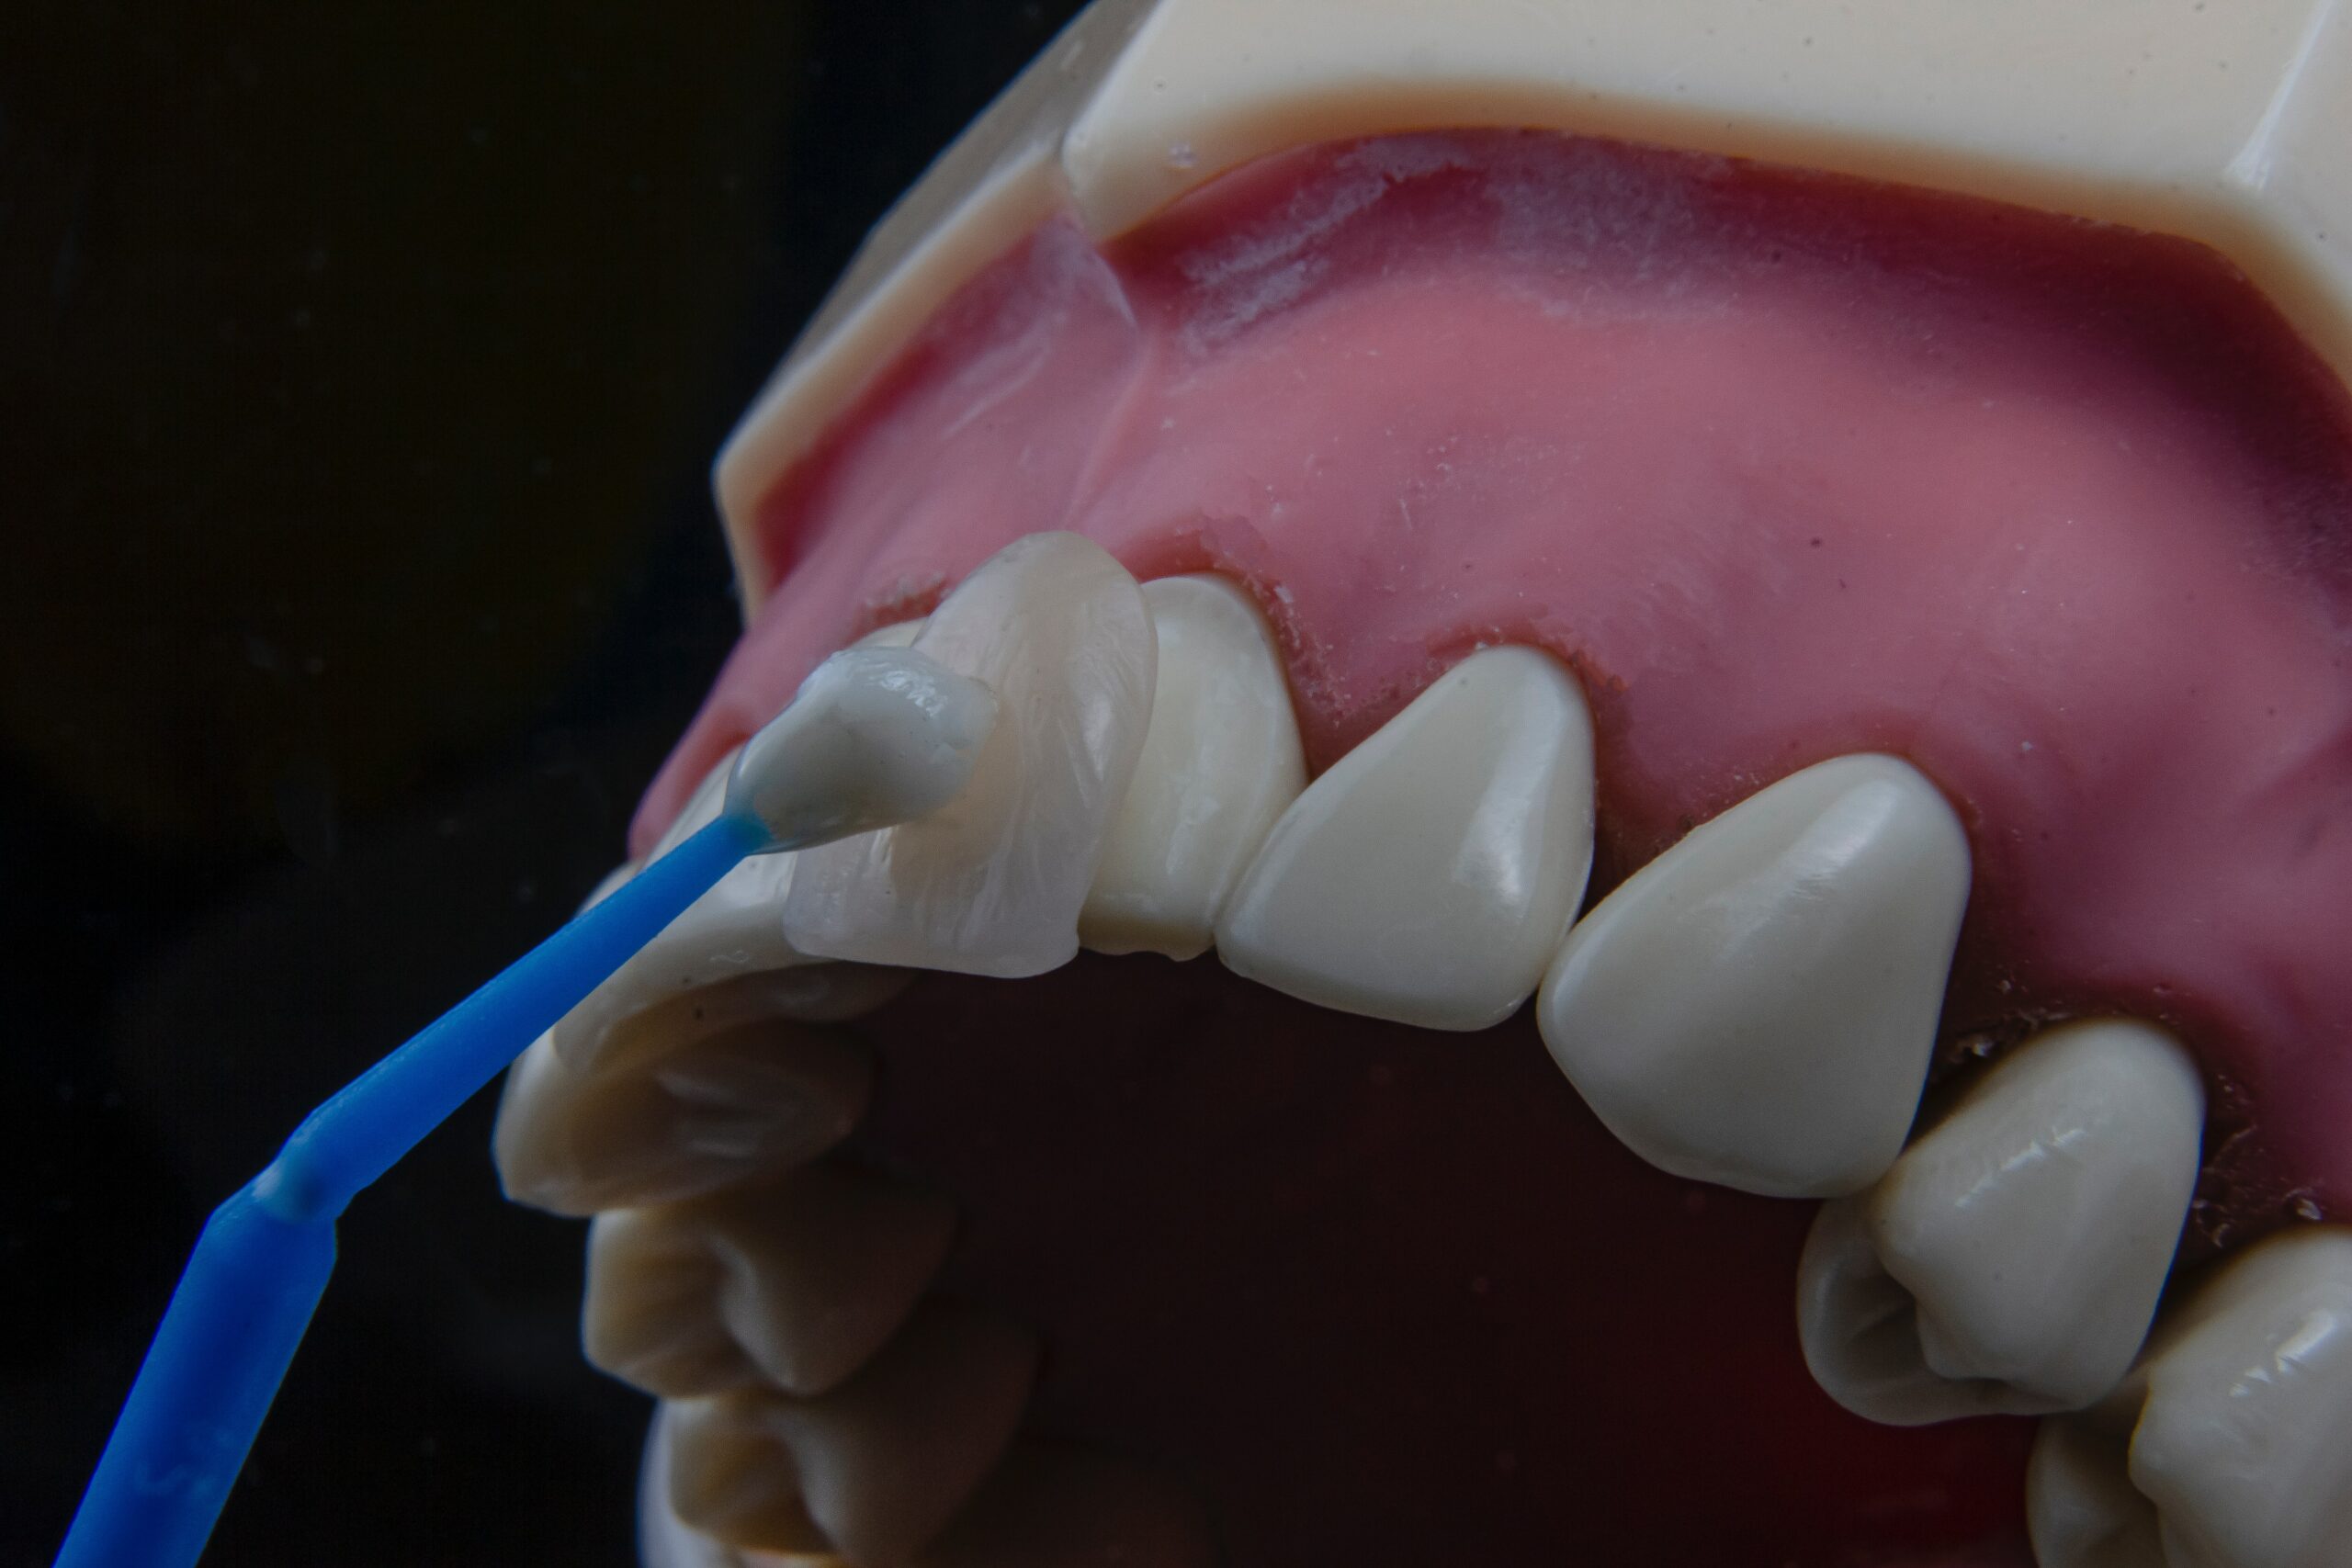 Dental veneer placed against a tooth